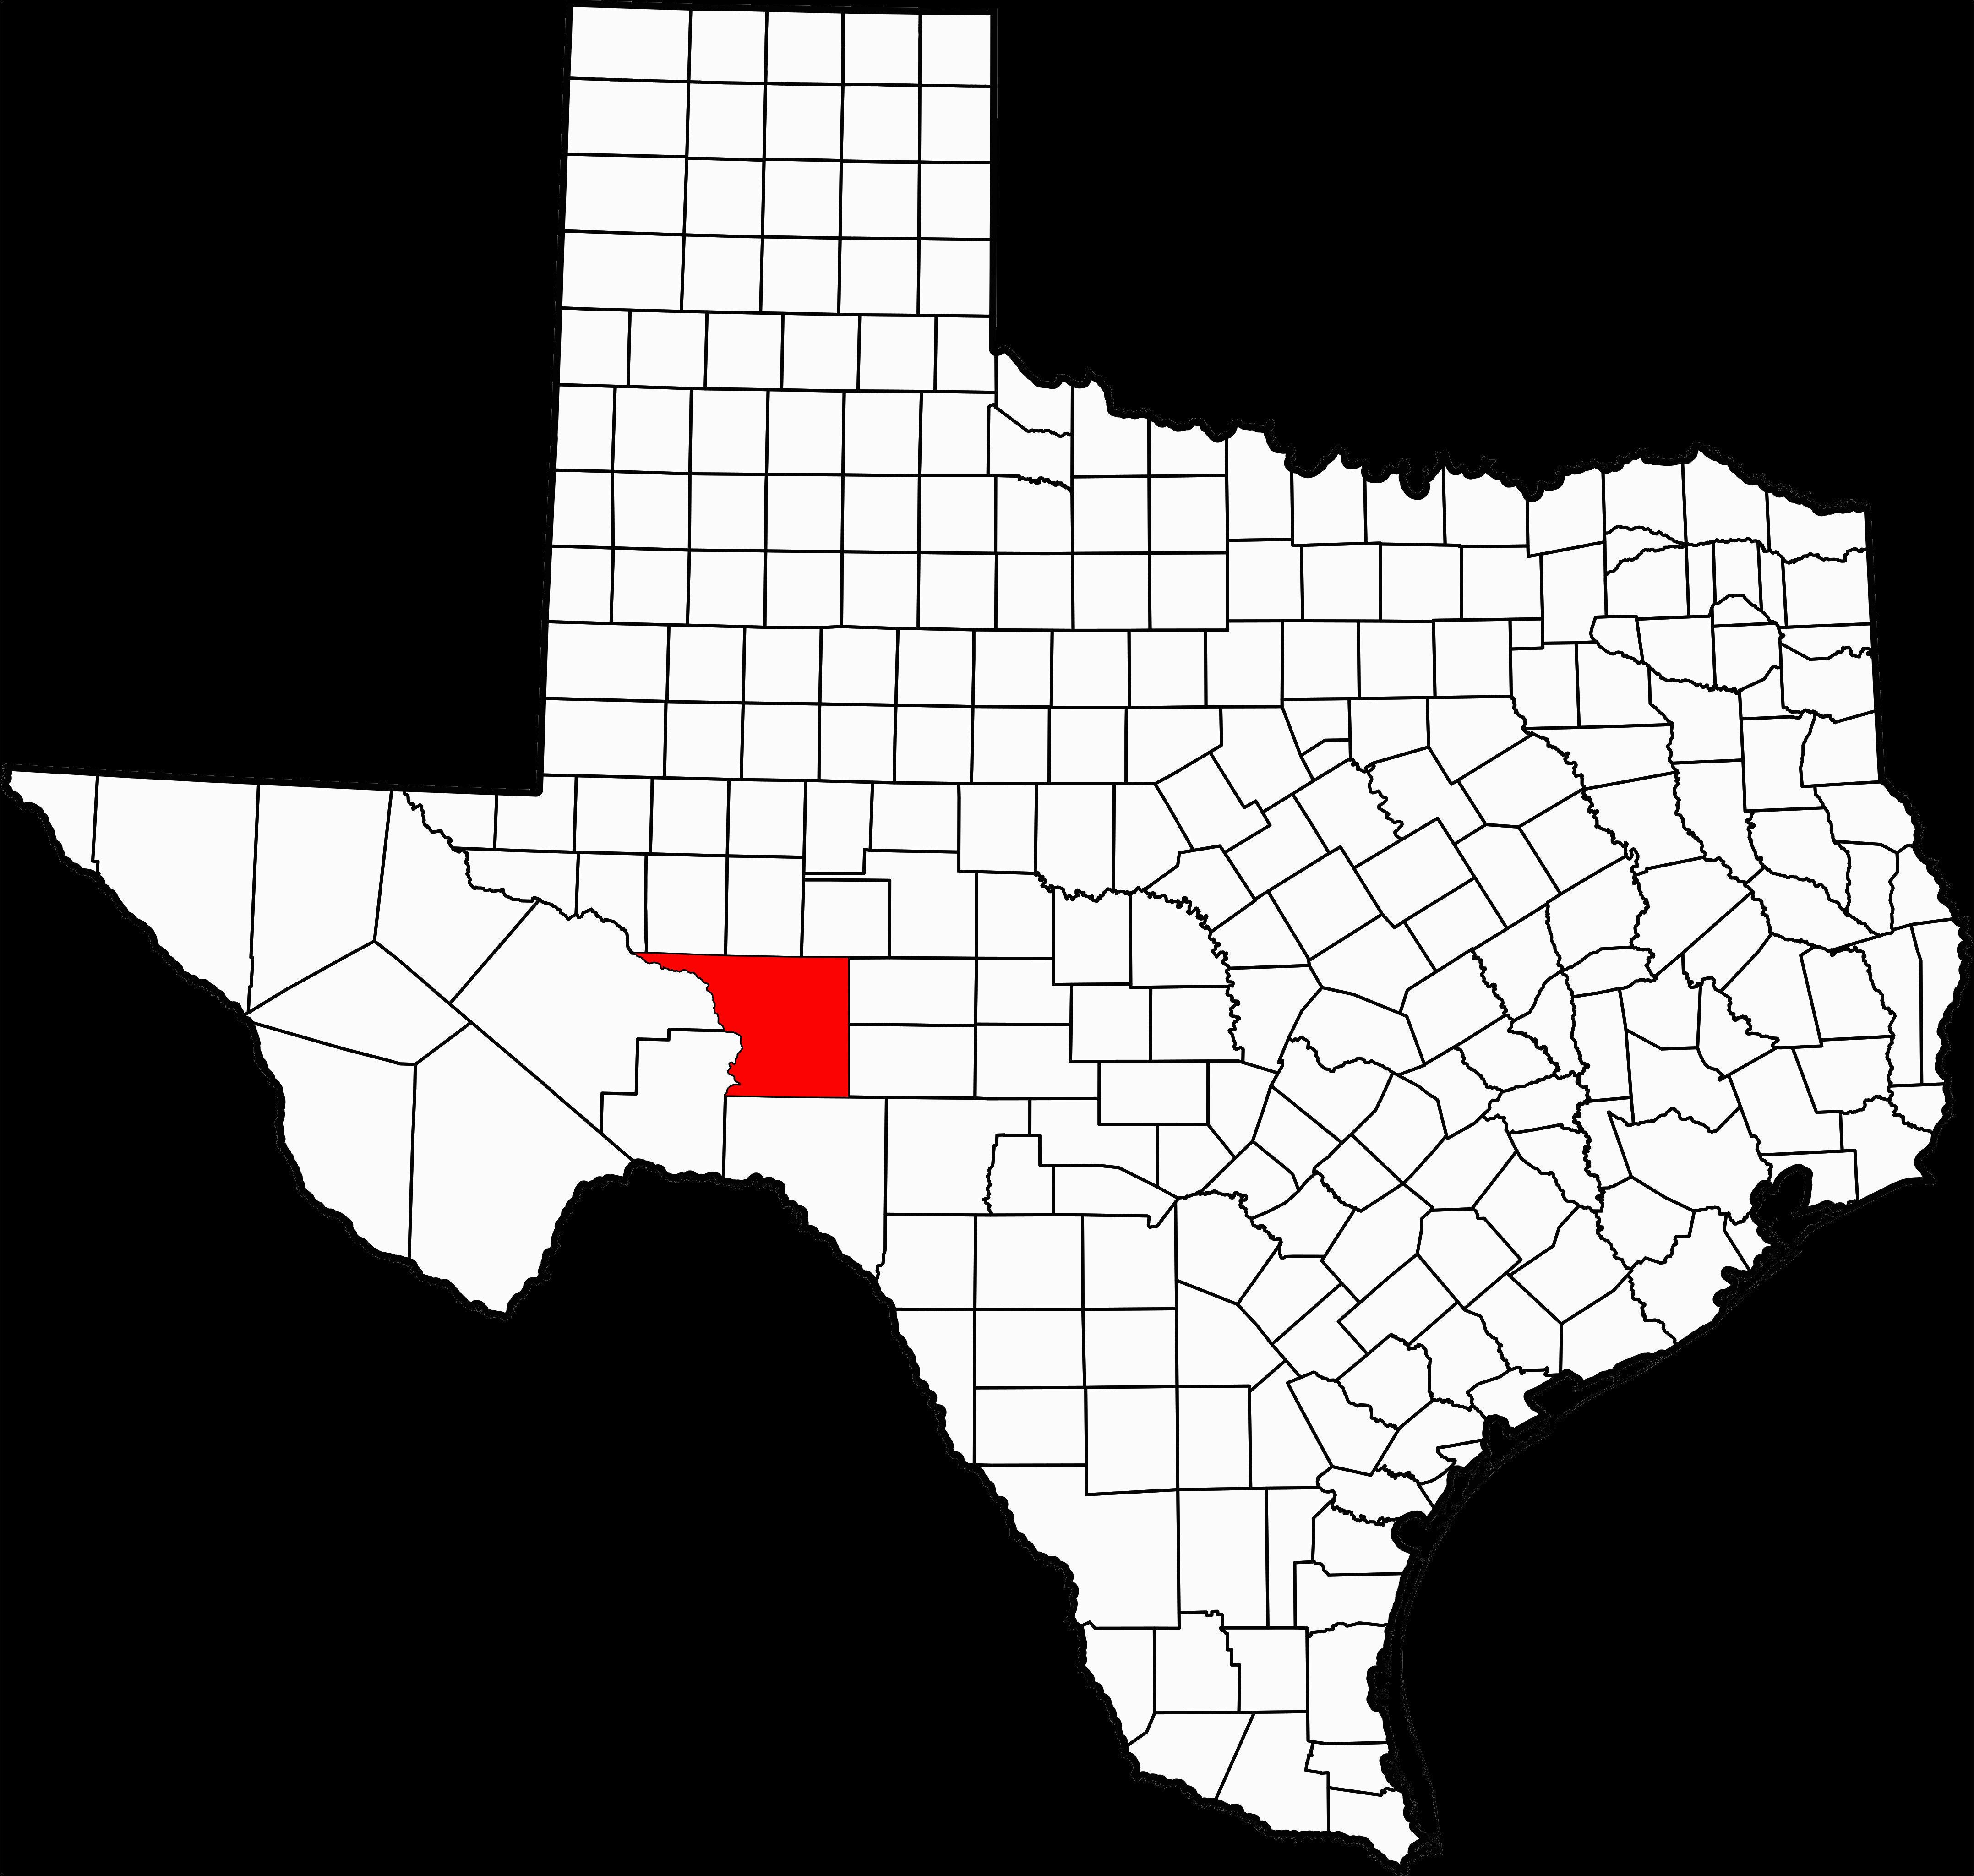 map of crockett texas business ideas 2013